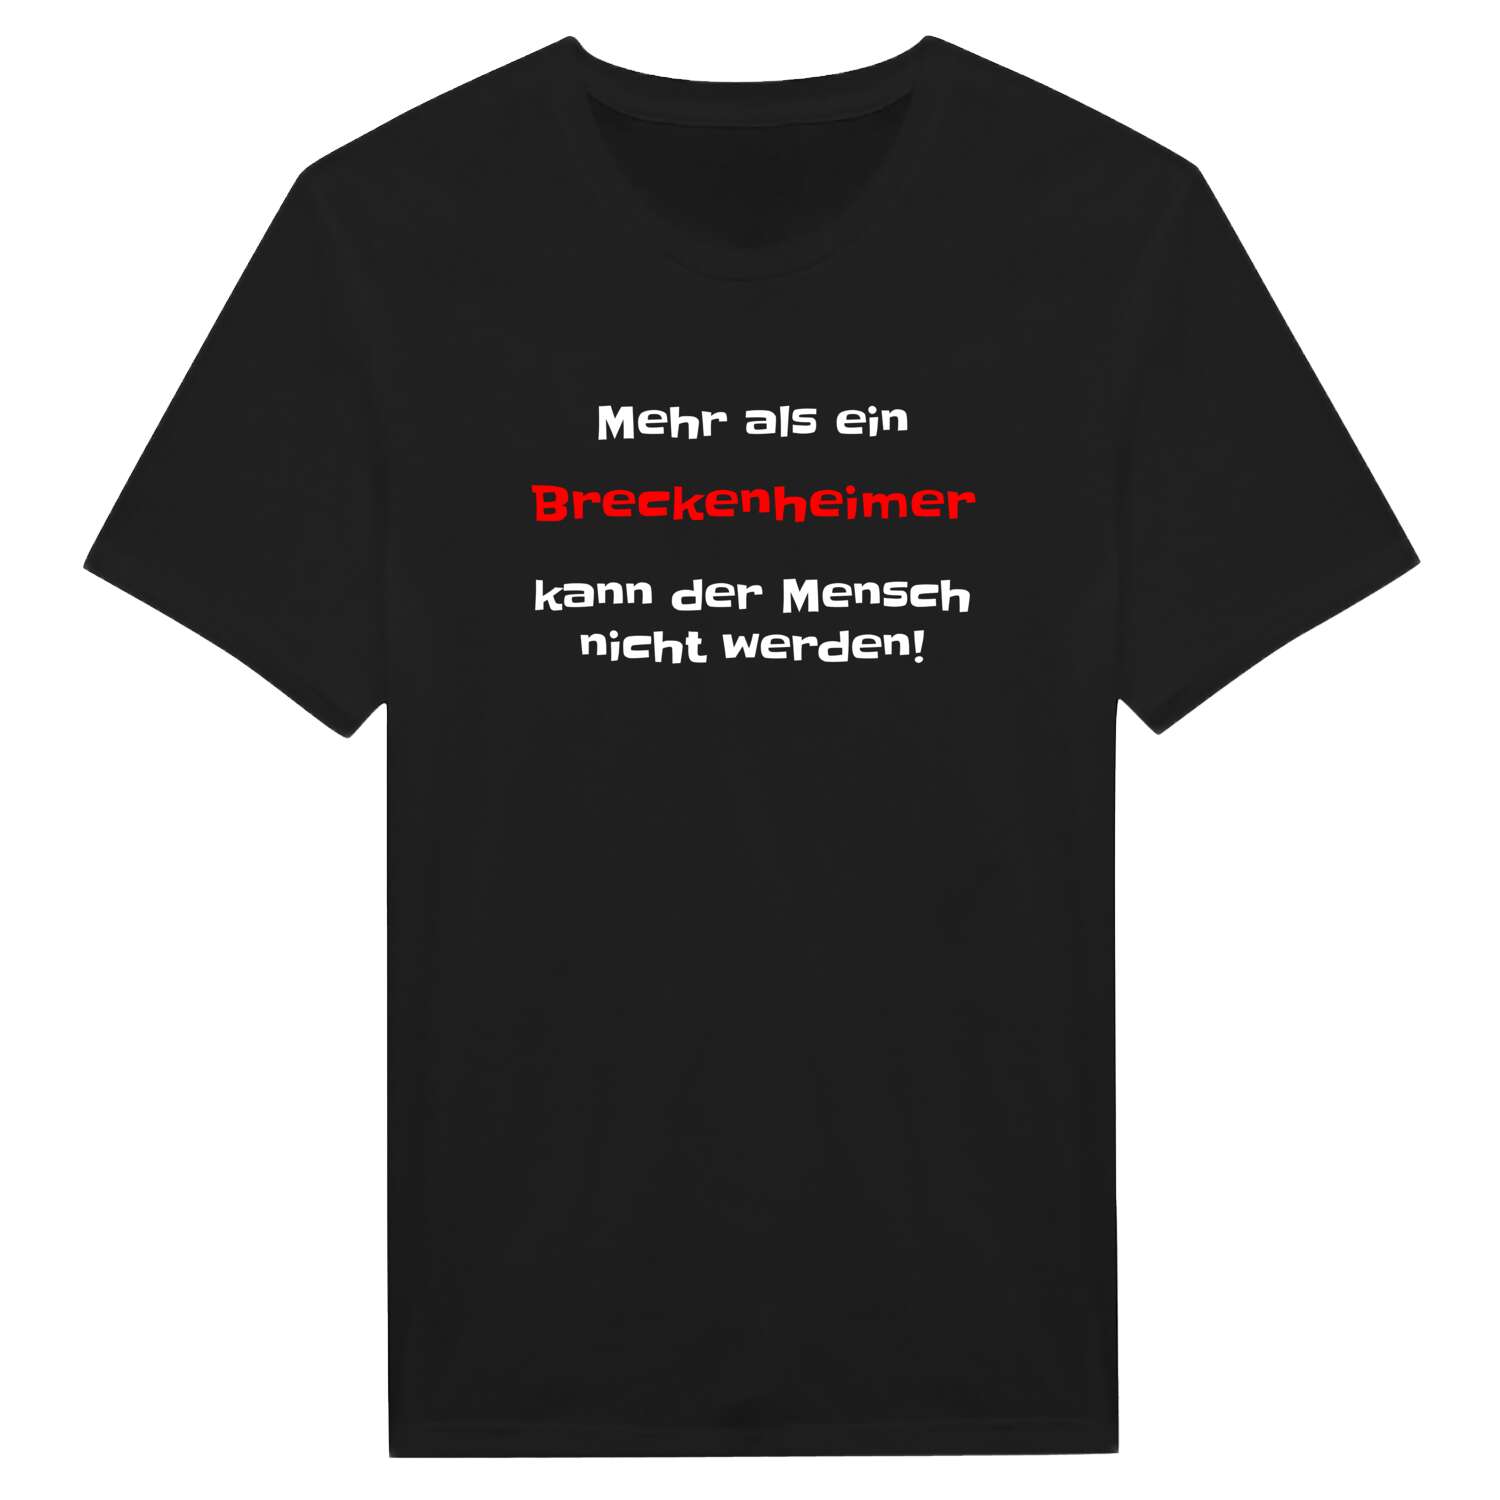 Breckenheim T-Shirt »Mehr als ein«